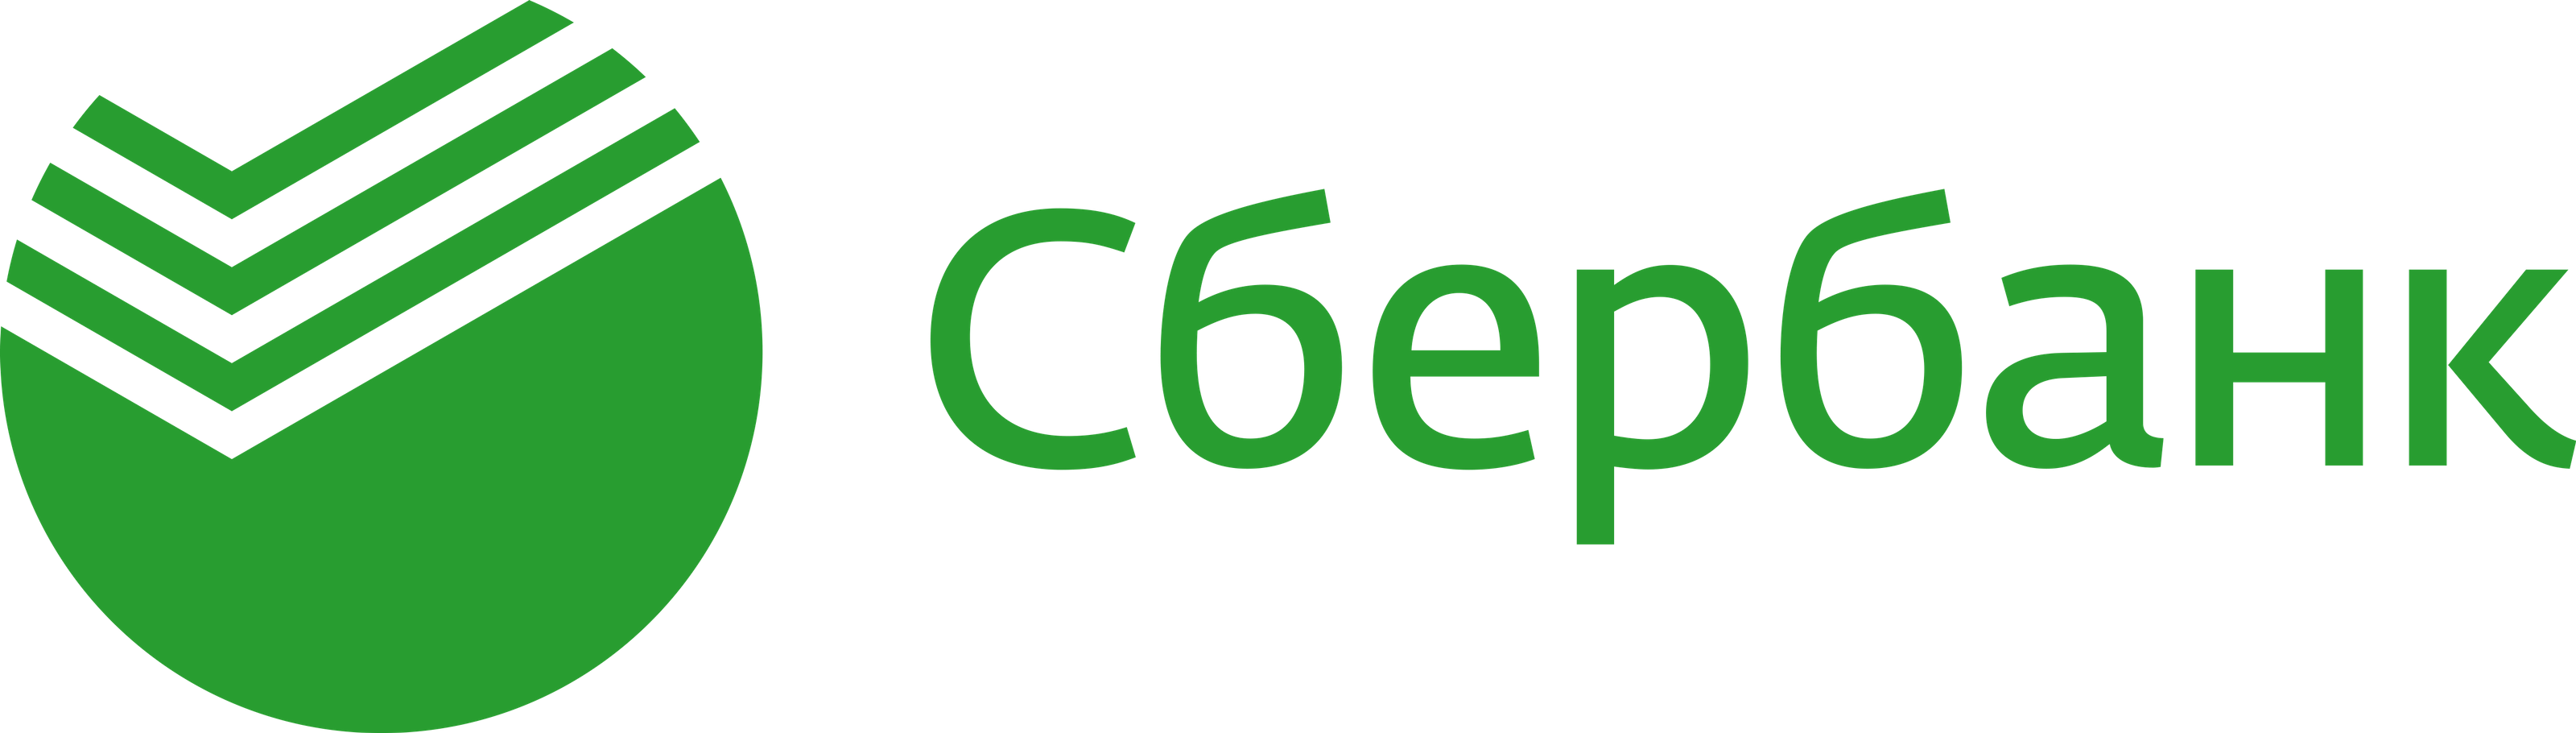 logo_Sber_new-p-3200